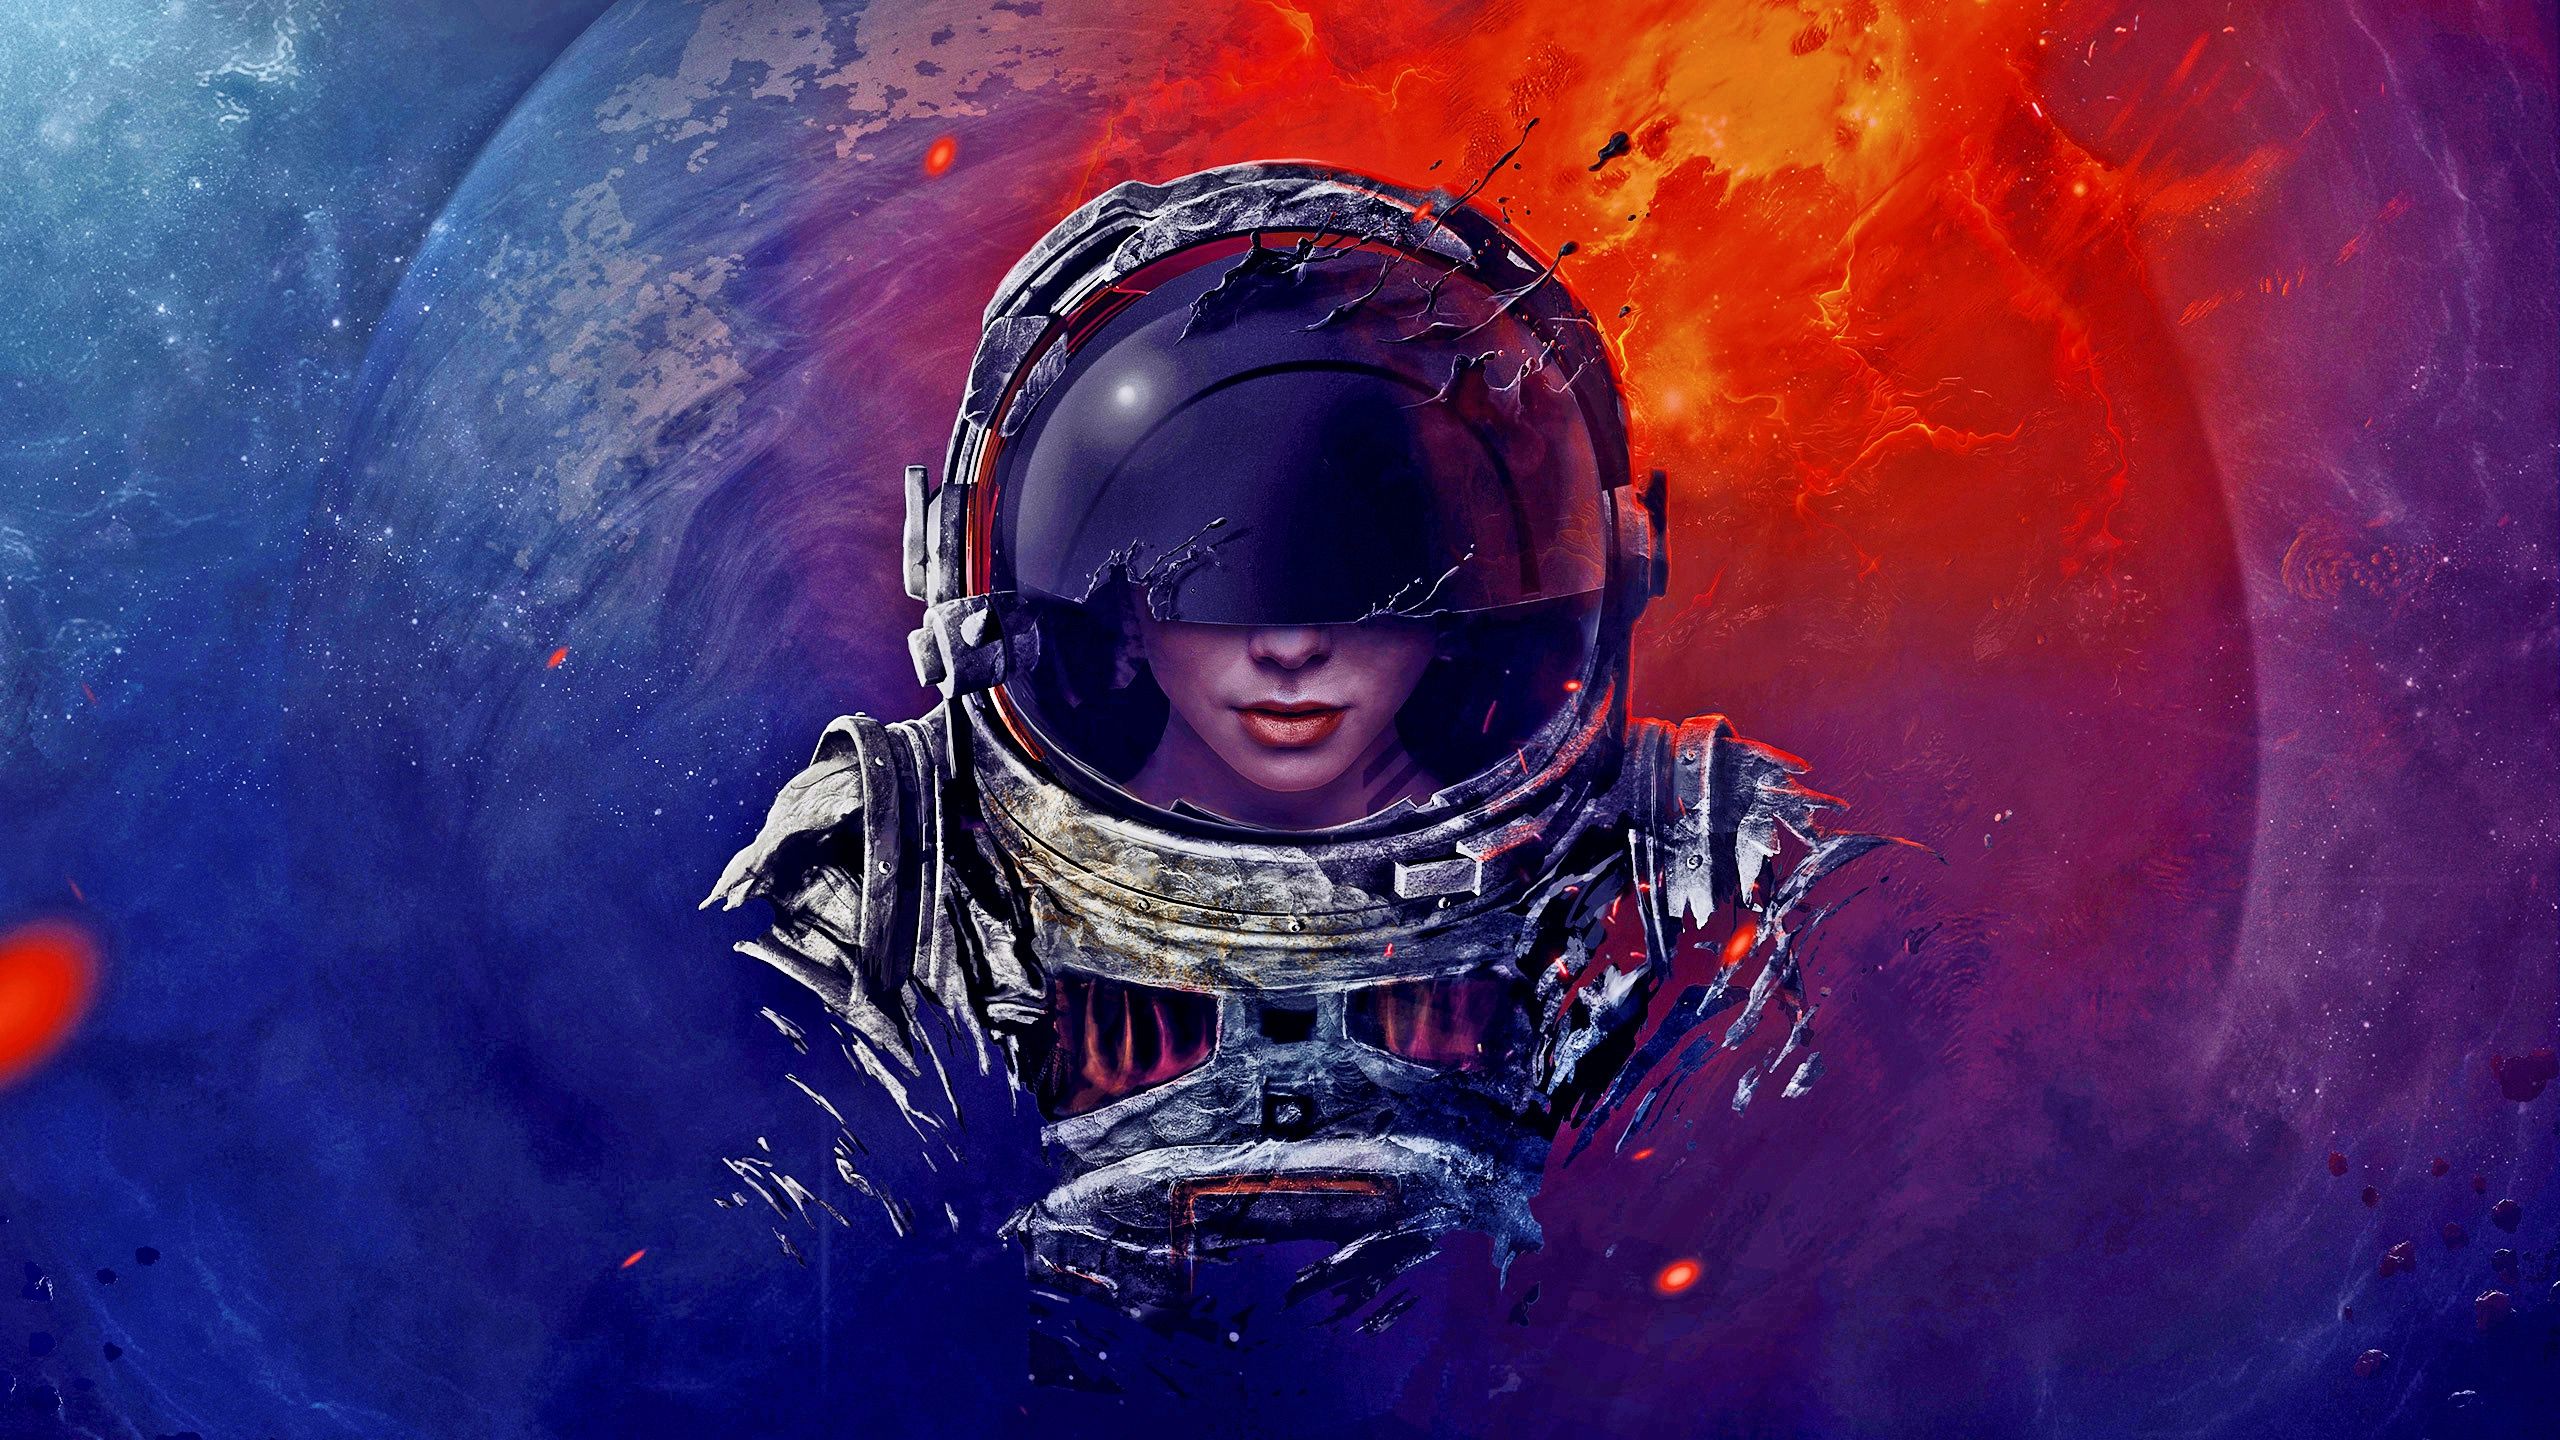 Astronaut Aesthetic Desktop Wallpapers  Top Free Astronaut Aesthetic  Desktop Backgrounds  WallpaperAccess